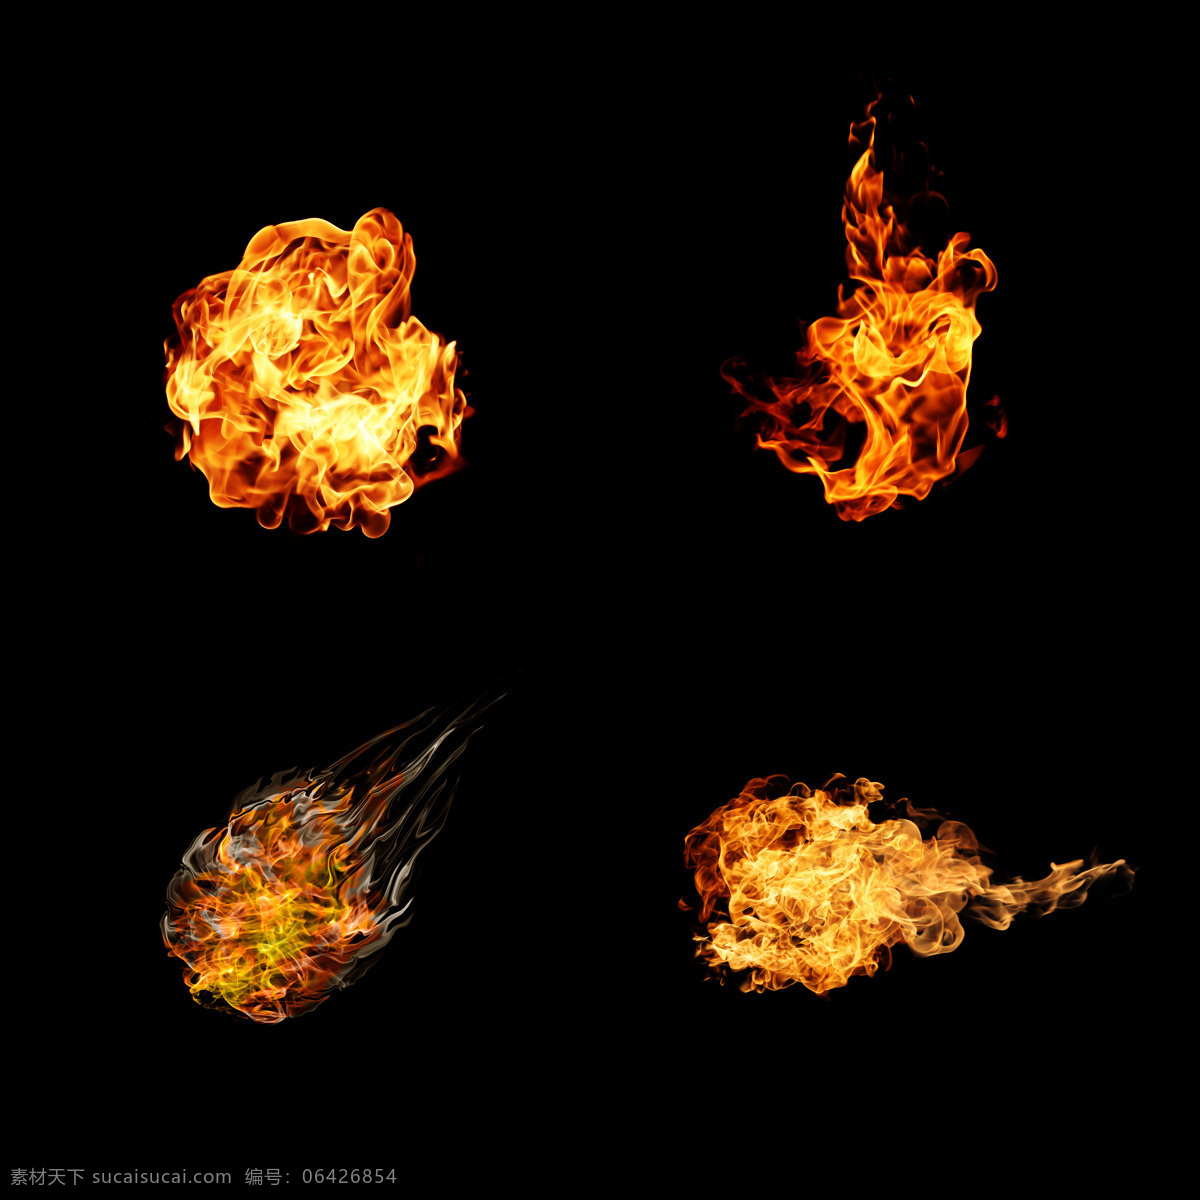 火苗 火焰 燃烧 火焰背景 冰水烈火 火焰图片 生活百科